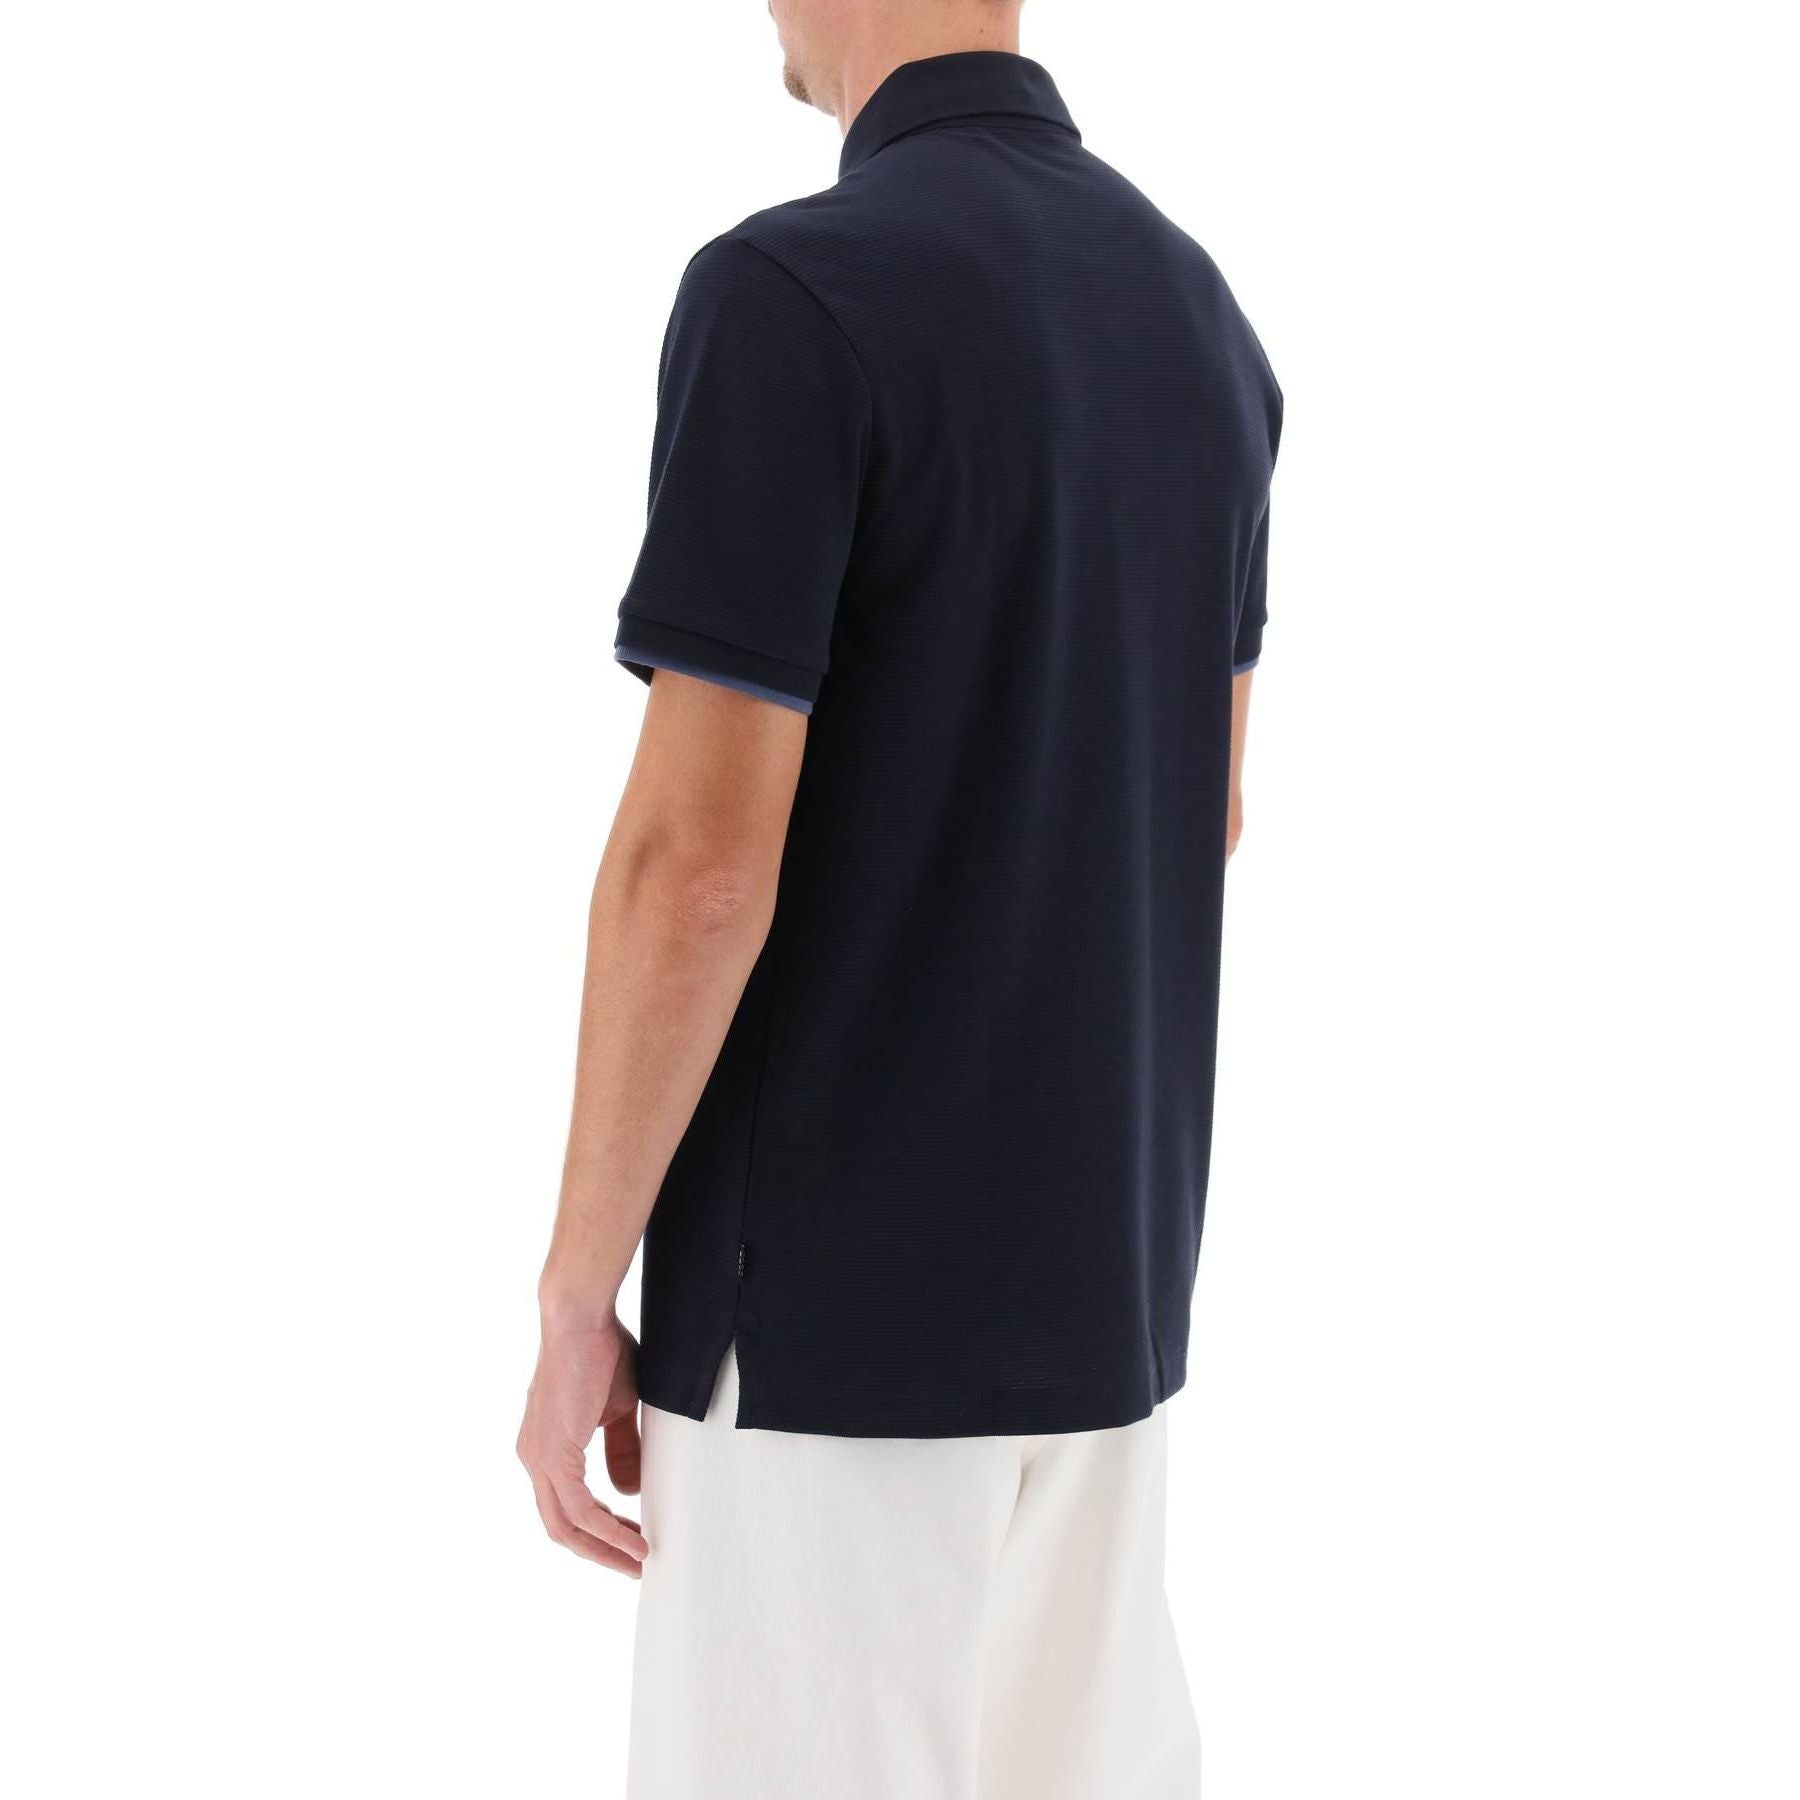 Cotton-Blend 'Phillipson' Slim Fit Polo Shirt